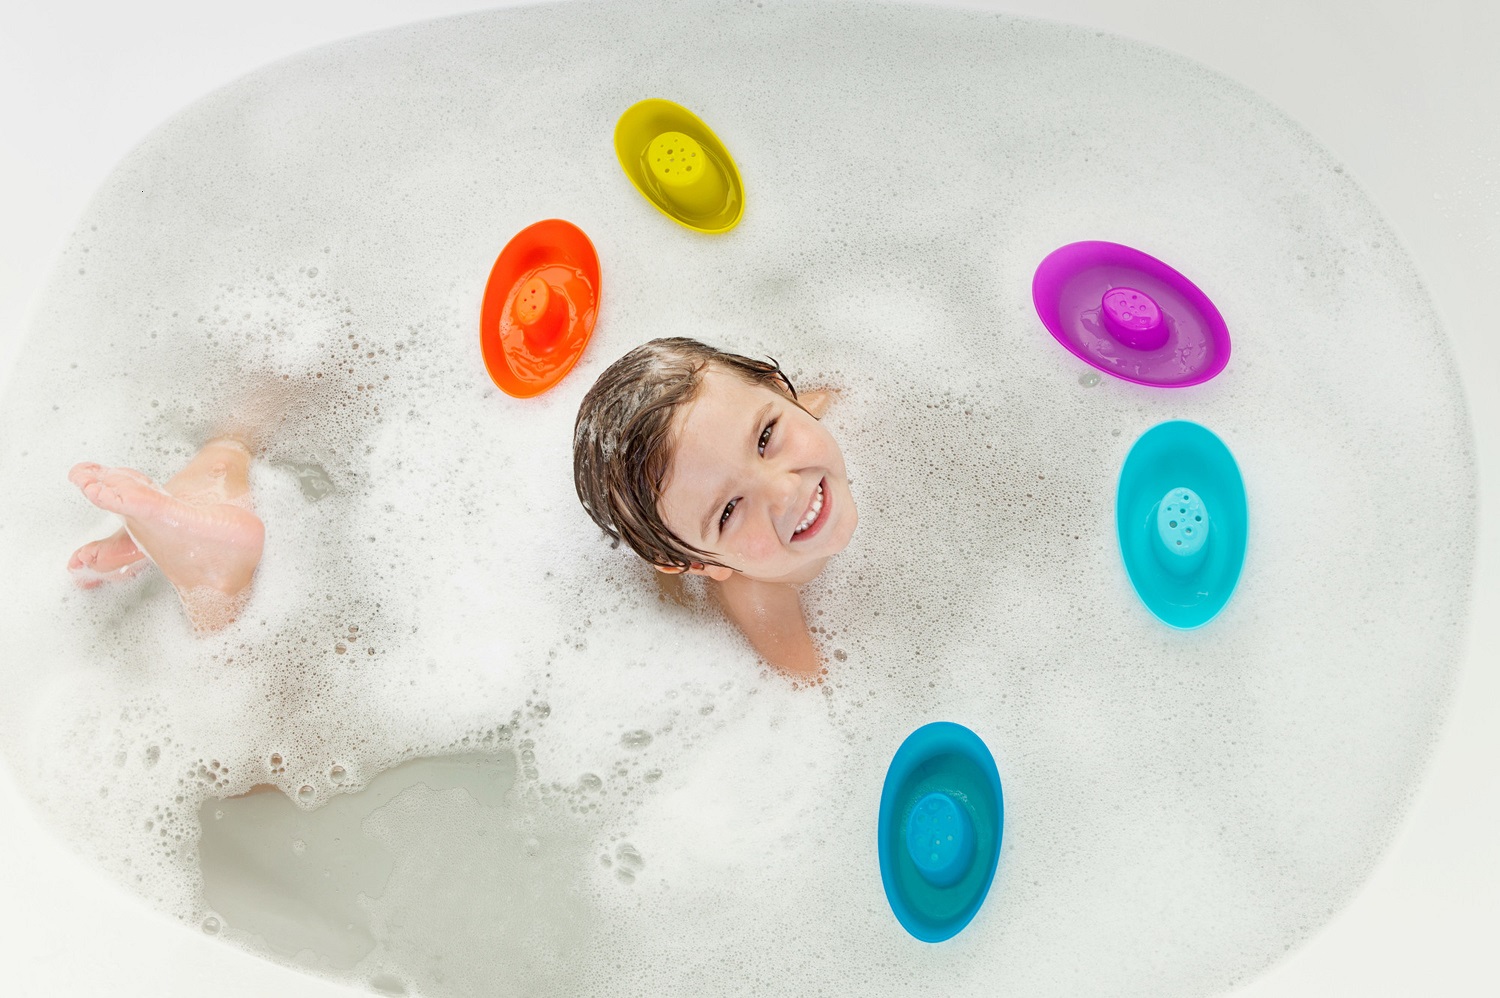 малыш в ванной, вид сверху, вокруг плавают разноцветные лодочки